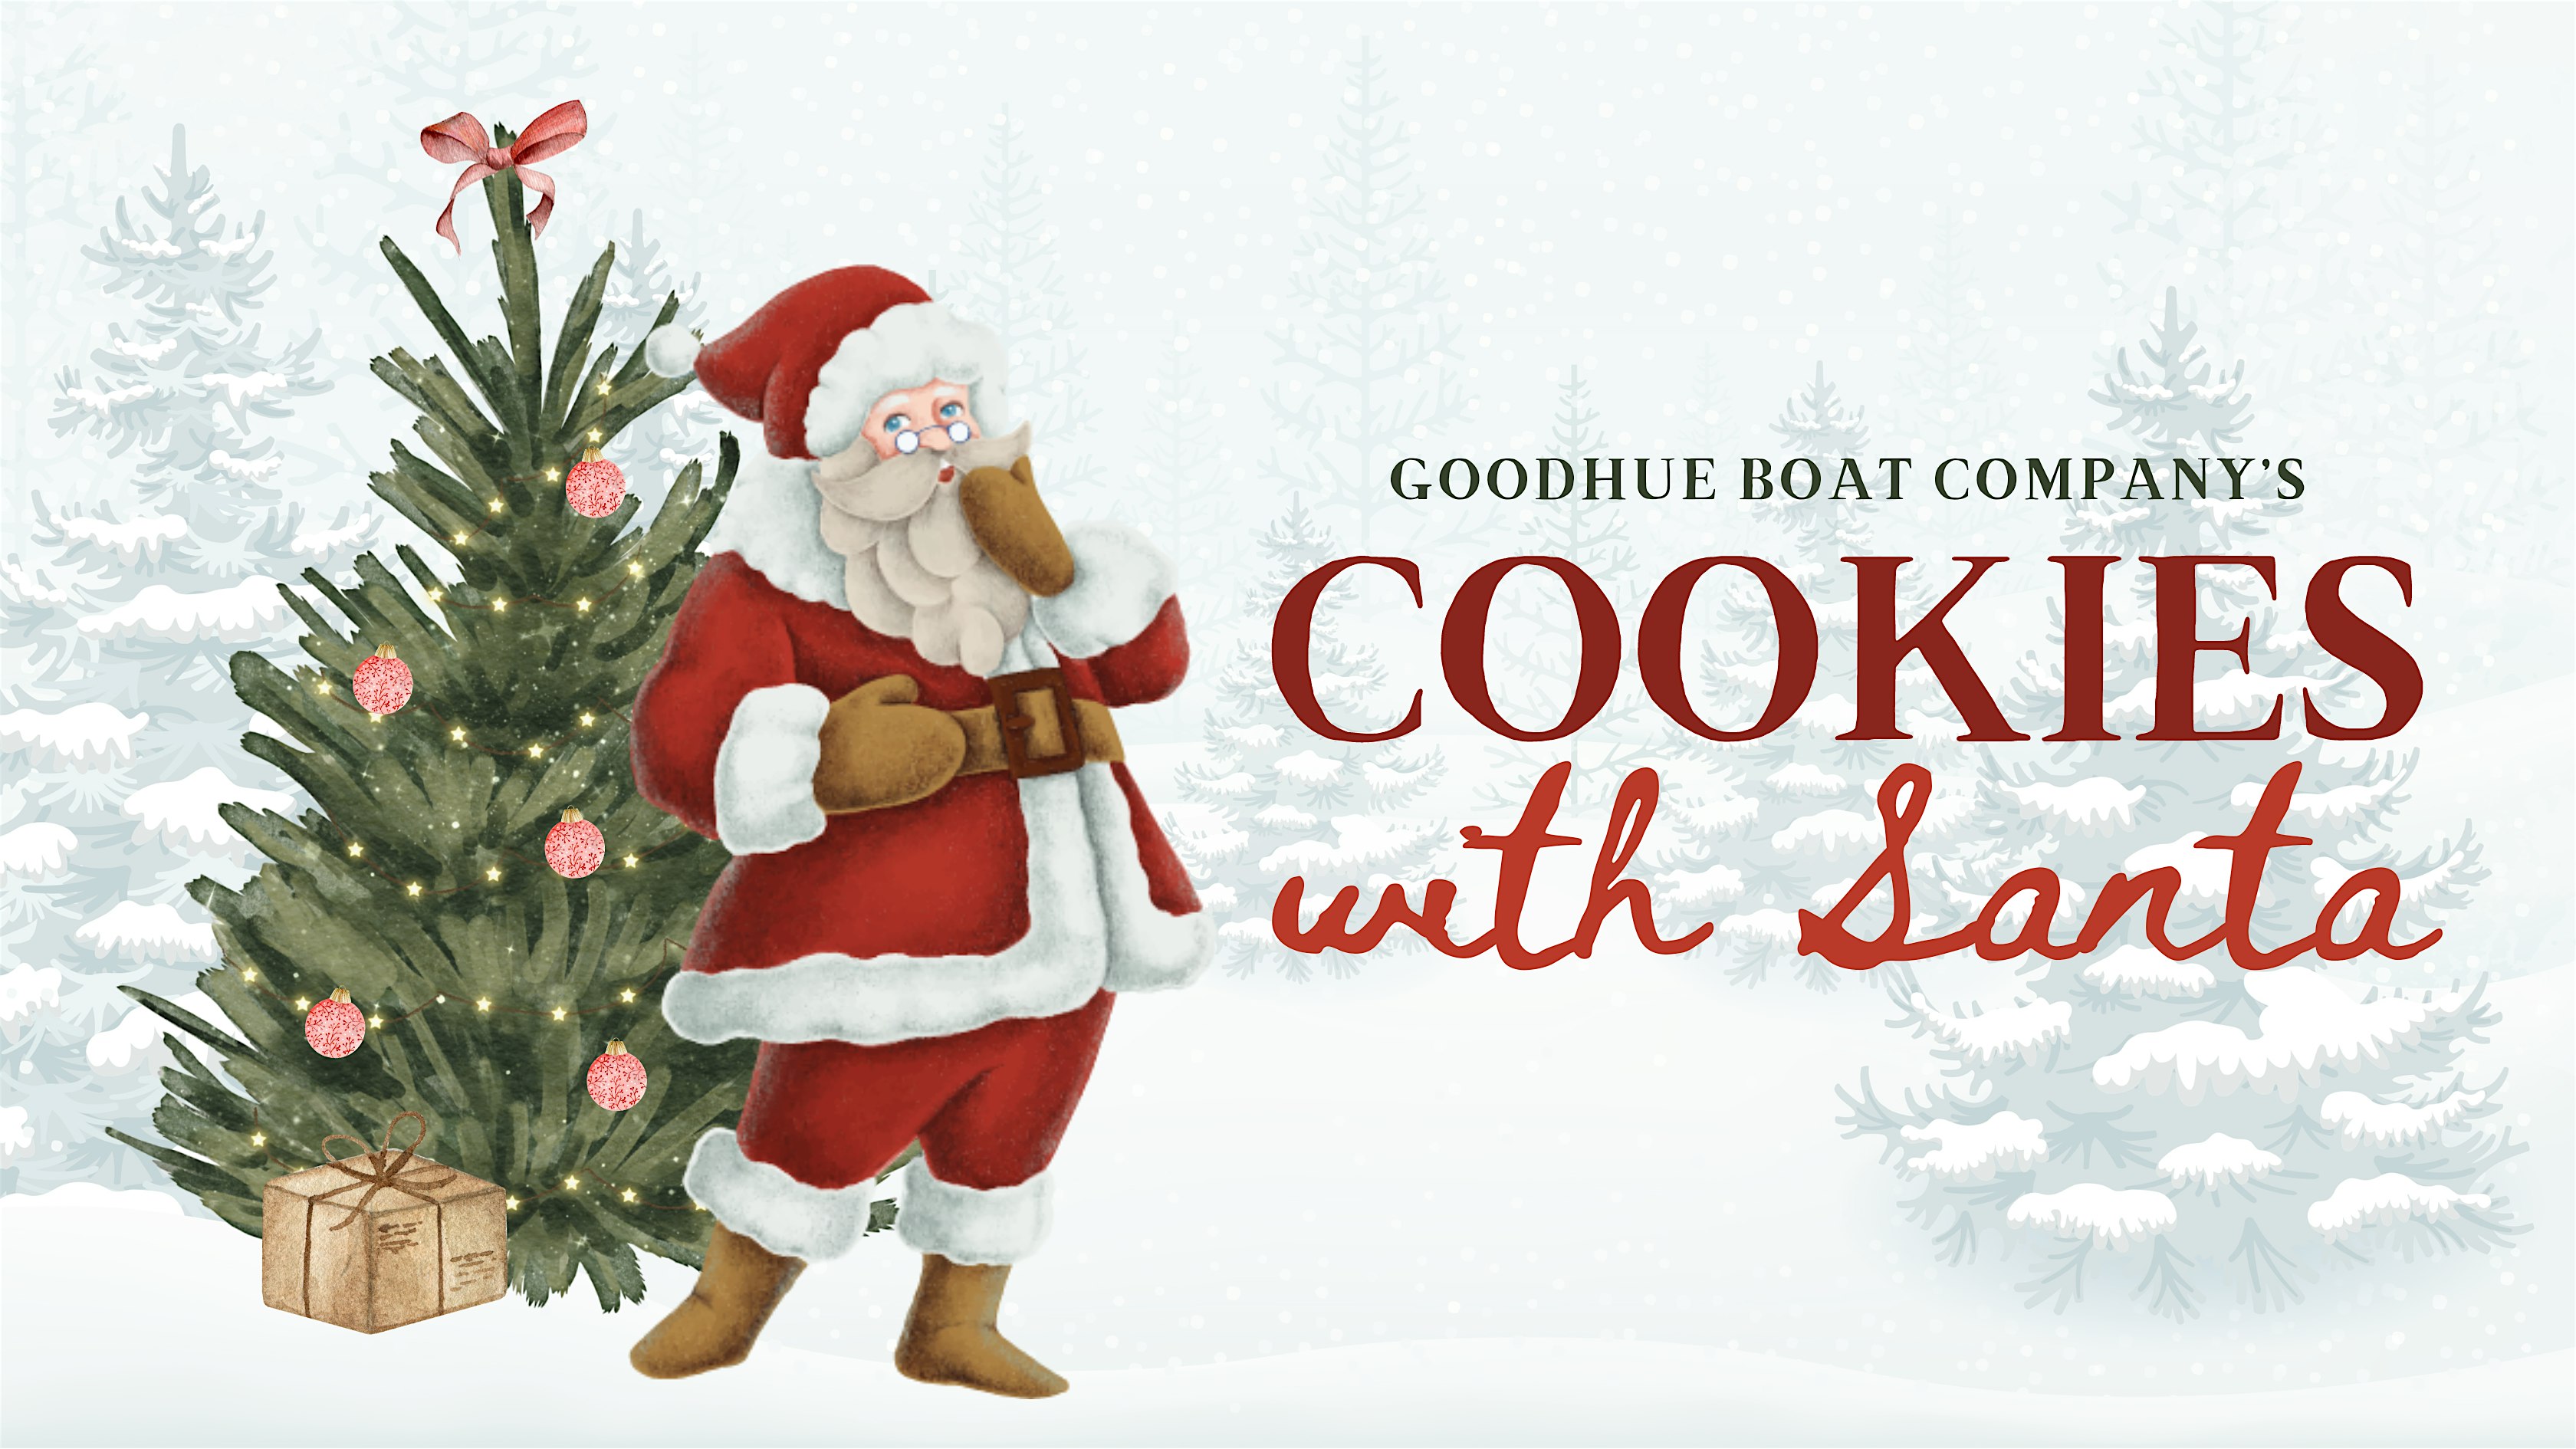 Cookies with Santa at Goodhue Boat Company